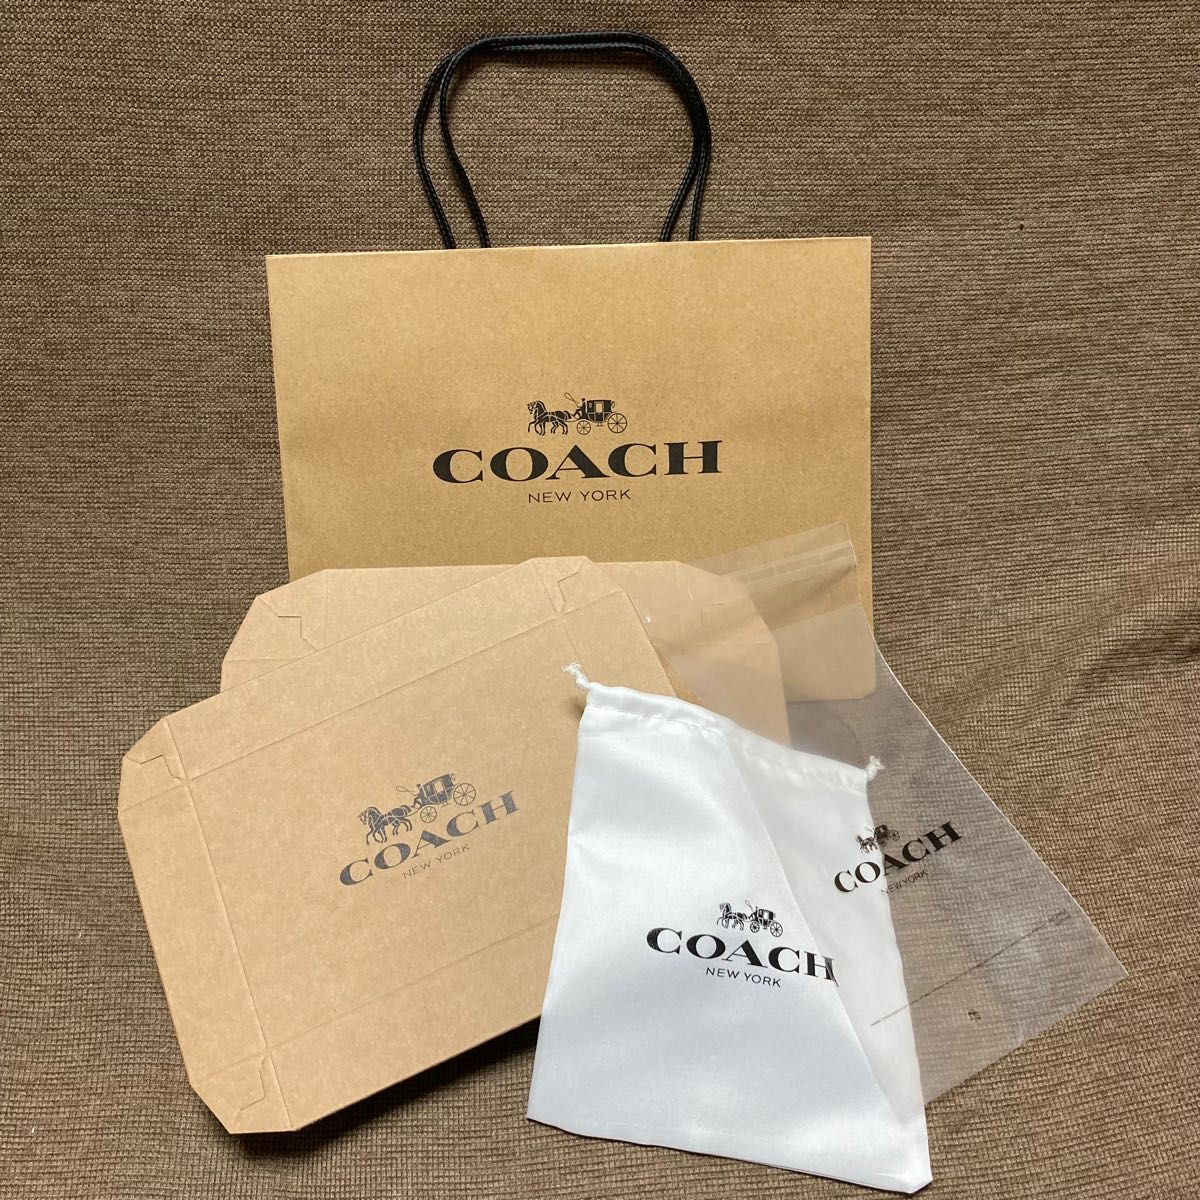 coachギフトプレゼント用保存巾着袋OPP袋BOX紙袋のセット